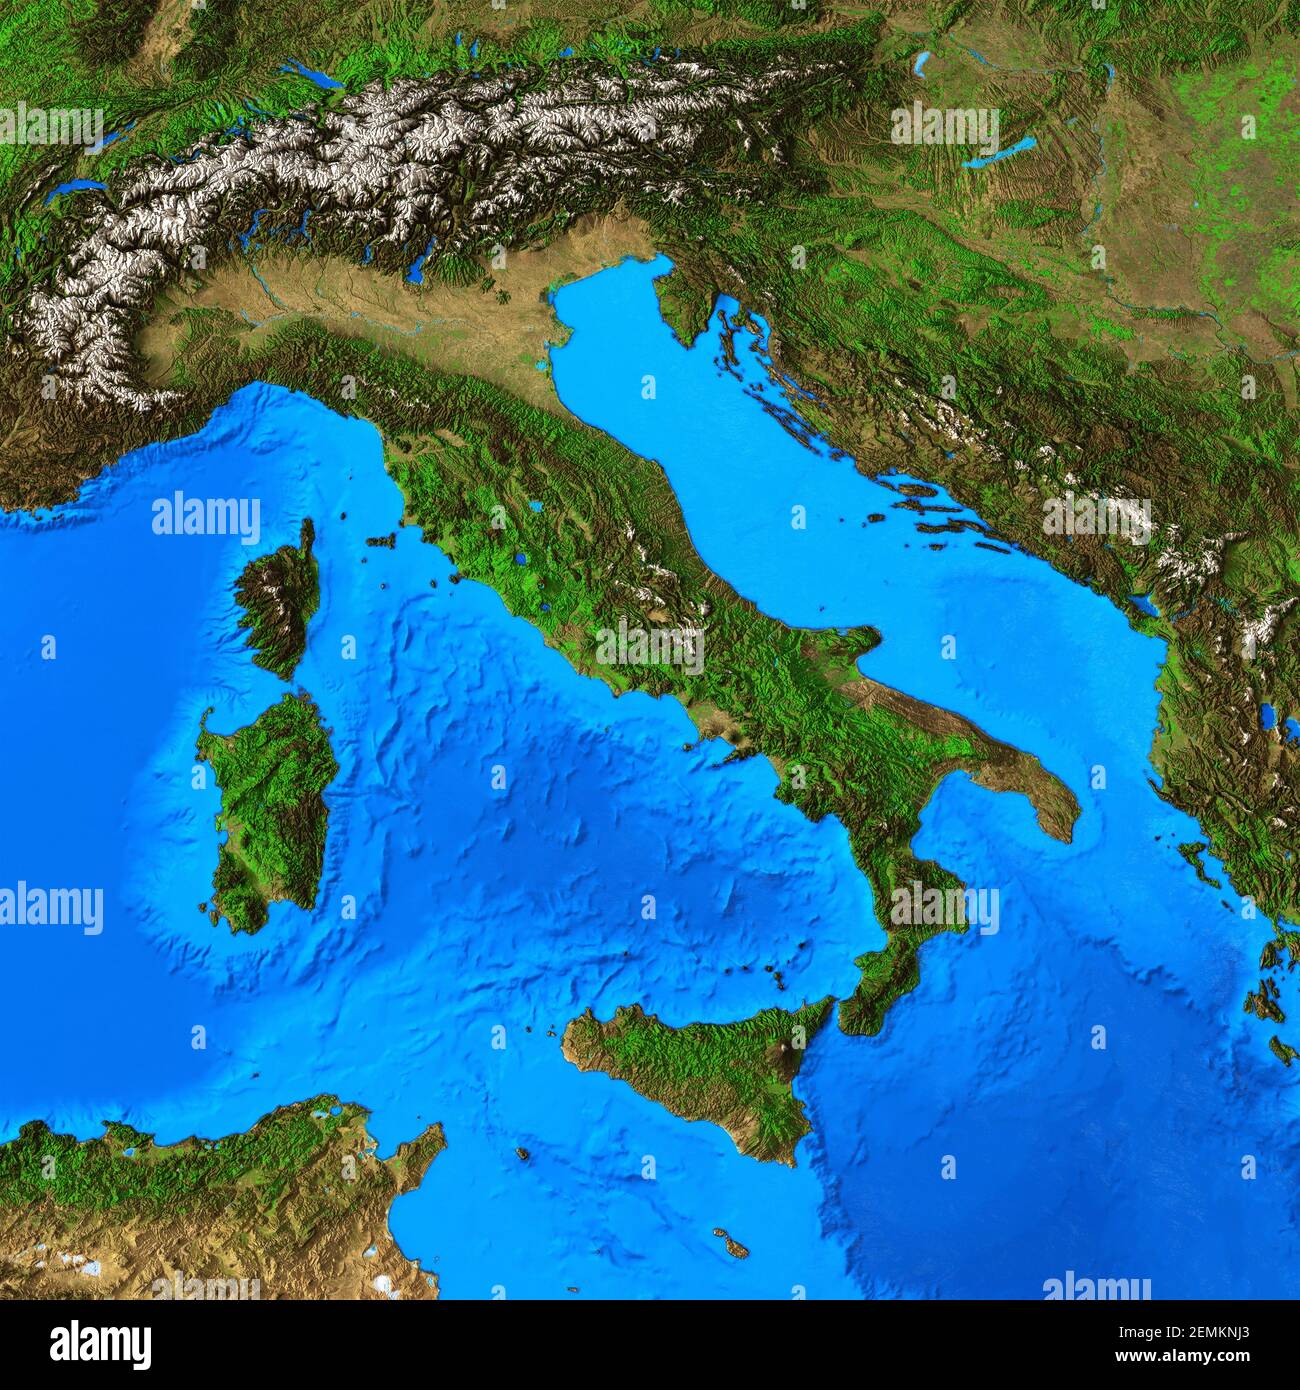 Carte physique de l'Italie et de la région italienne. Vue plate détaillée de la planète Terre et de ses formes terrestres - éléments fournis par la NASA Banque D'Images